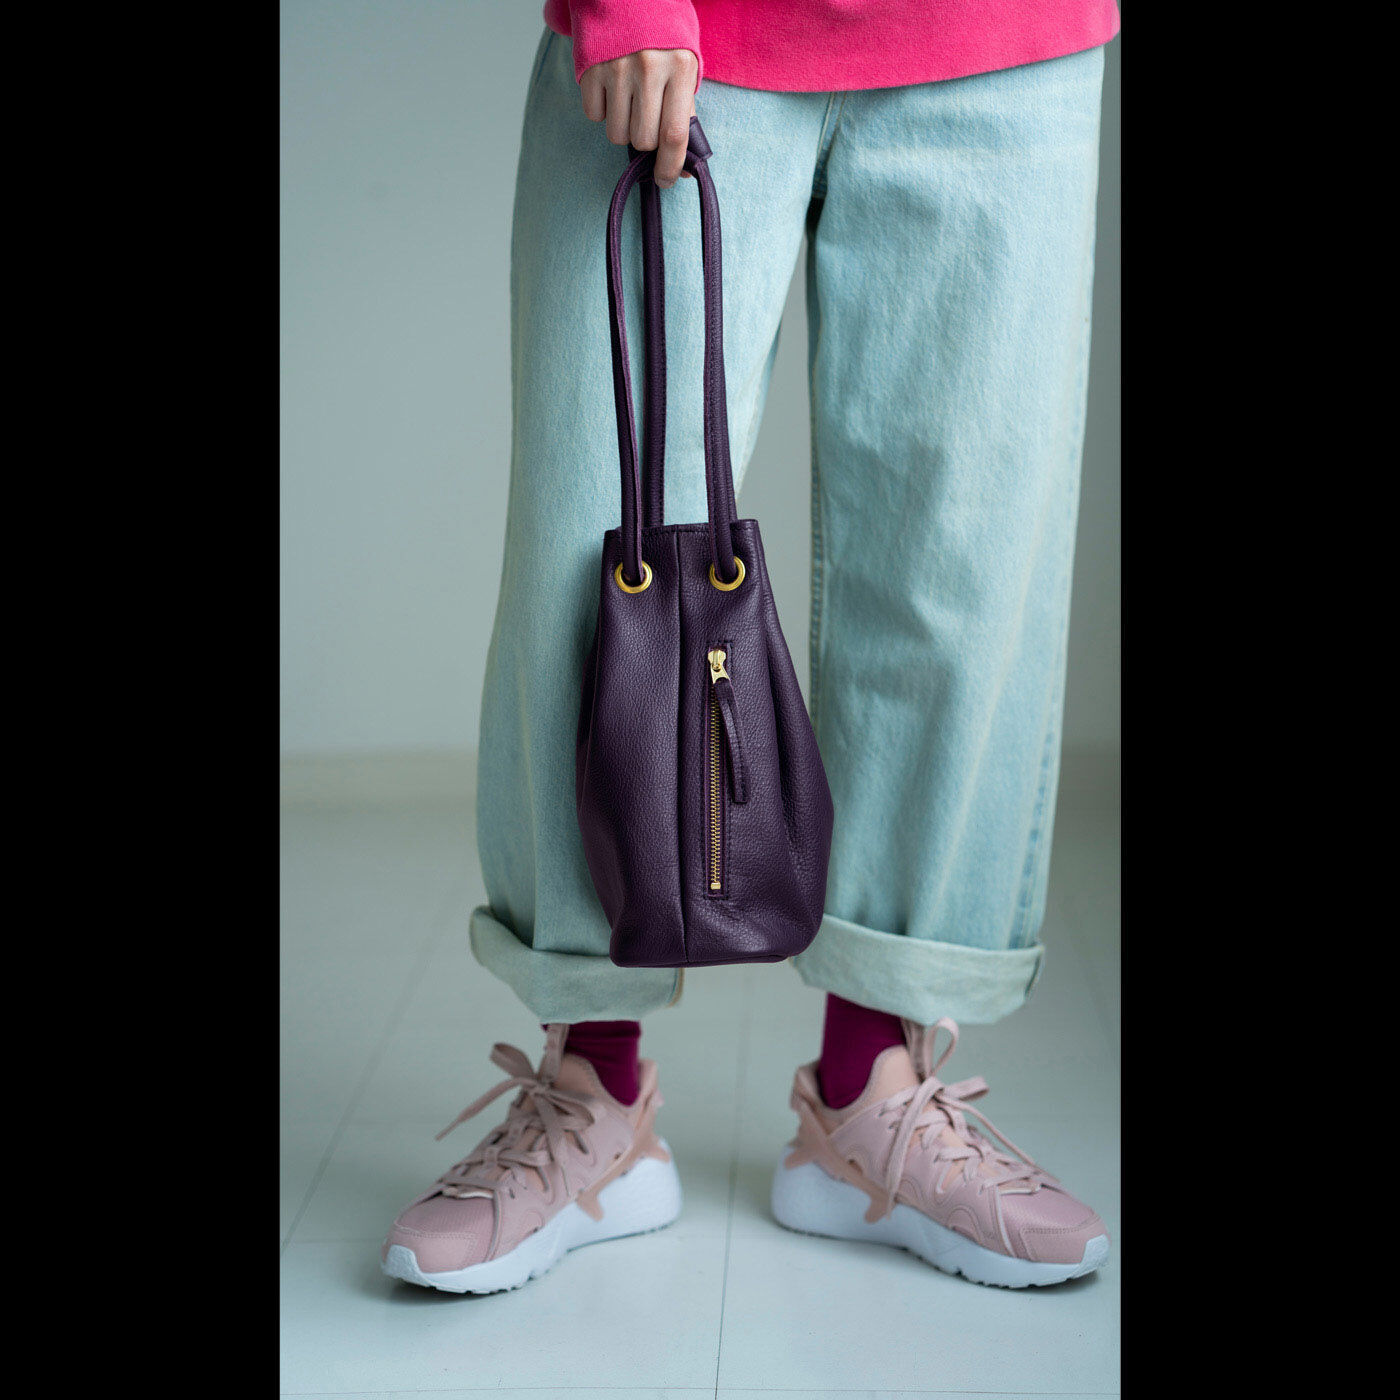 ＆Stories|福岡の鞄作家が作った 職人本革の巾着バッグ〈葡萄色〉|葡萄色は、コーディネートのアクセントになりつつ、ほどよくなじむカラーです。